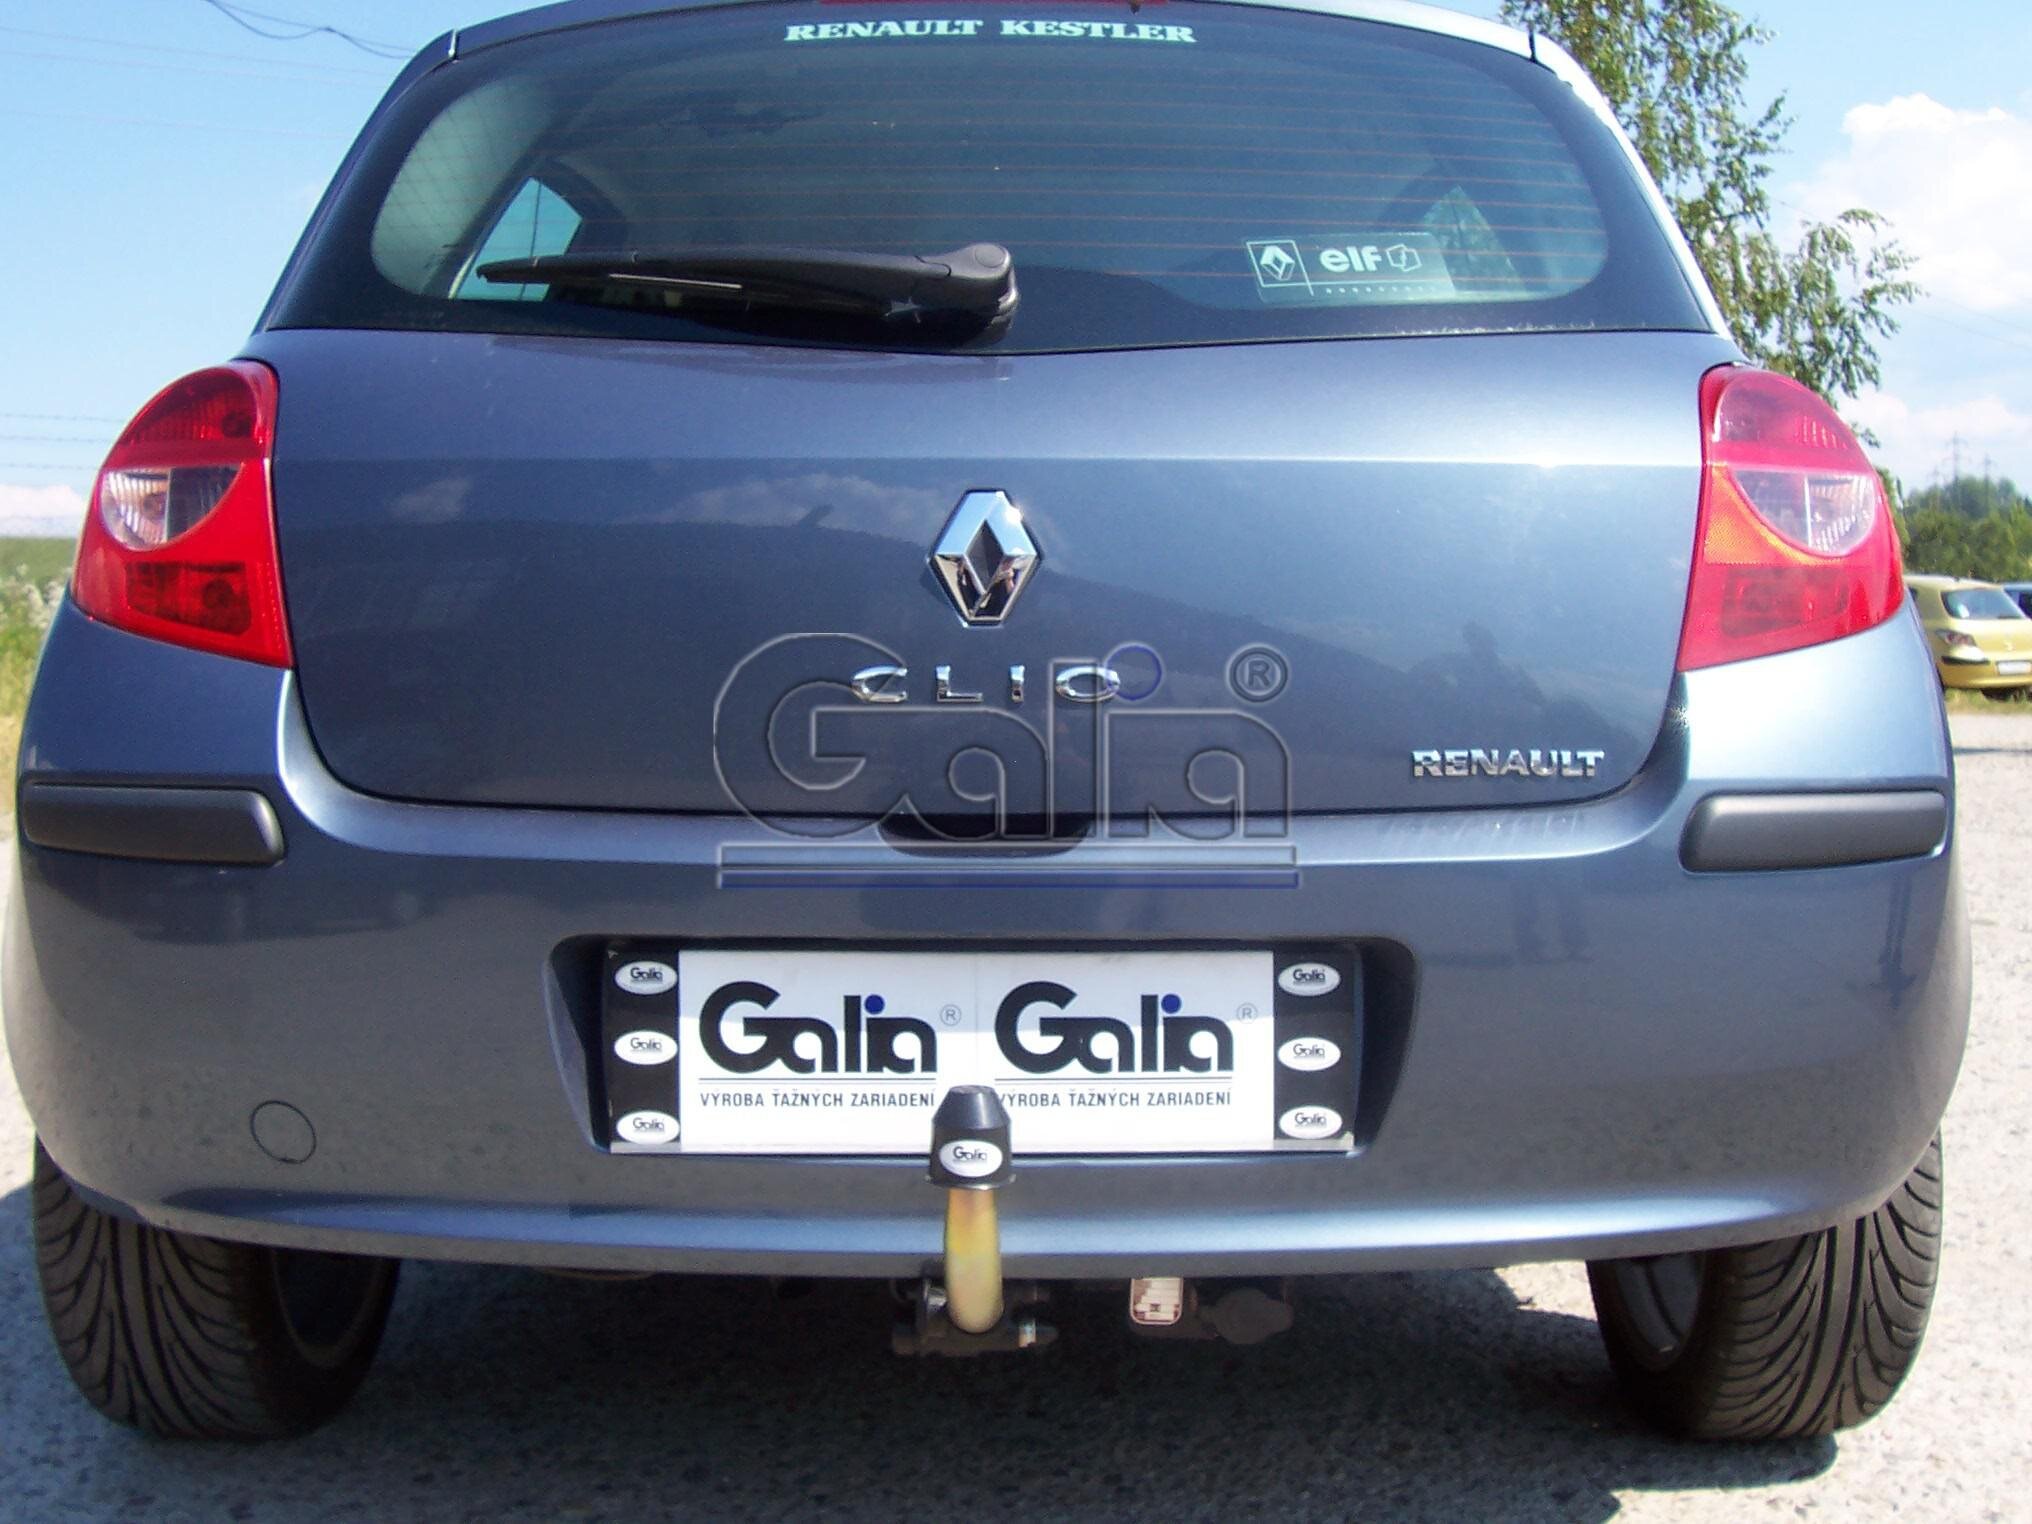 Фаркоп Galia для Renault Clio хетчбек 5 дверей 2005-2012